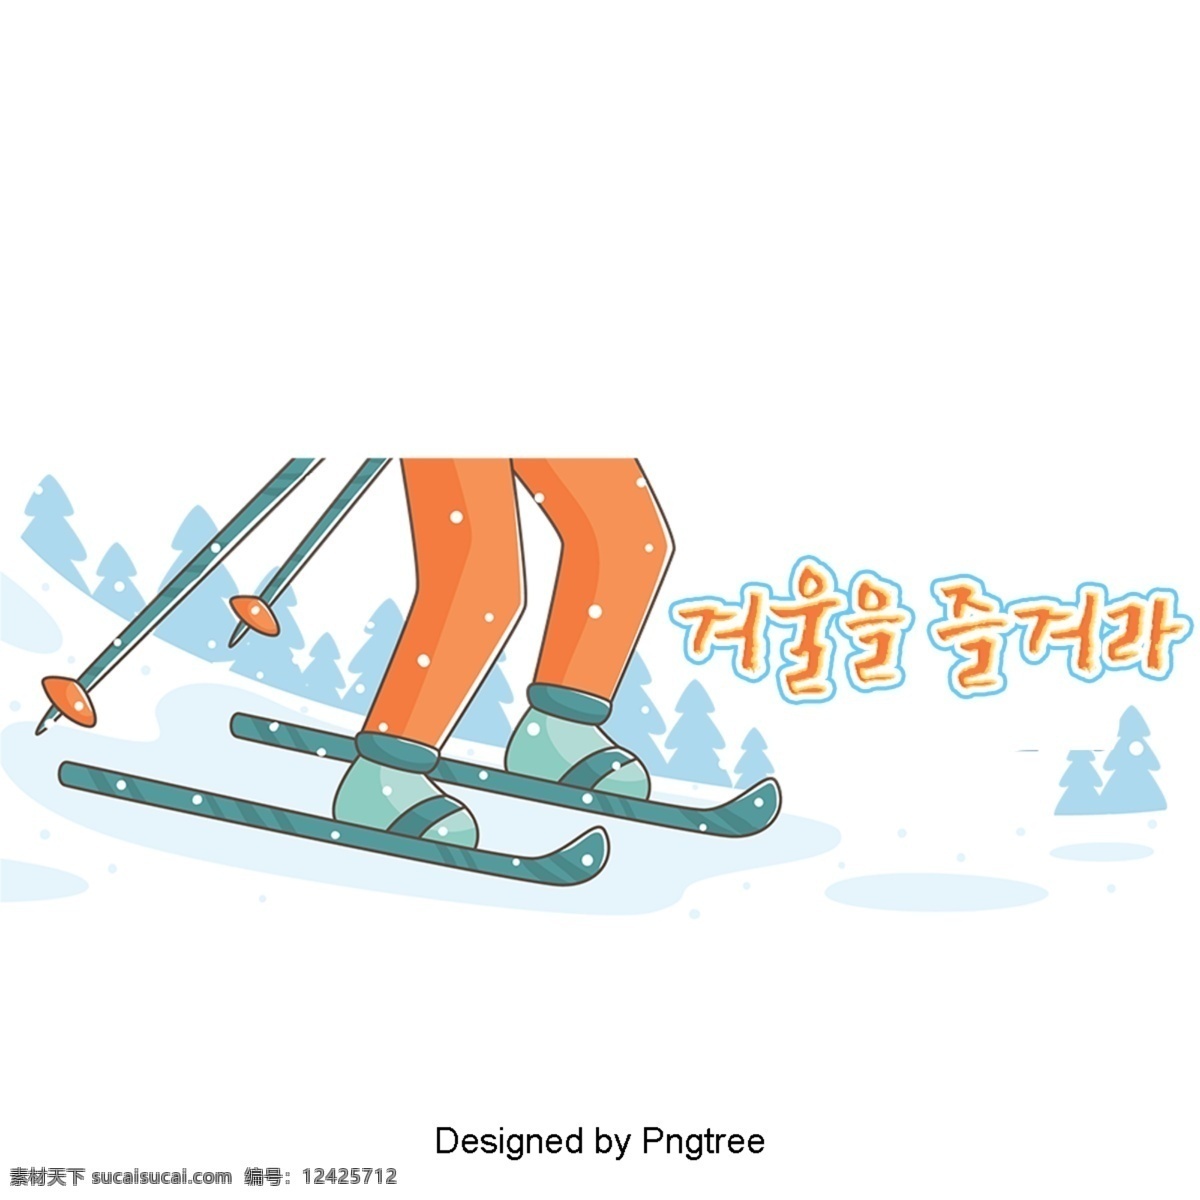 冬季 运动 冰 一个 美丽 字体 冬天雪橇 可爱